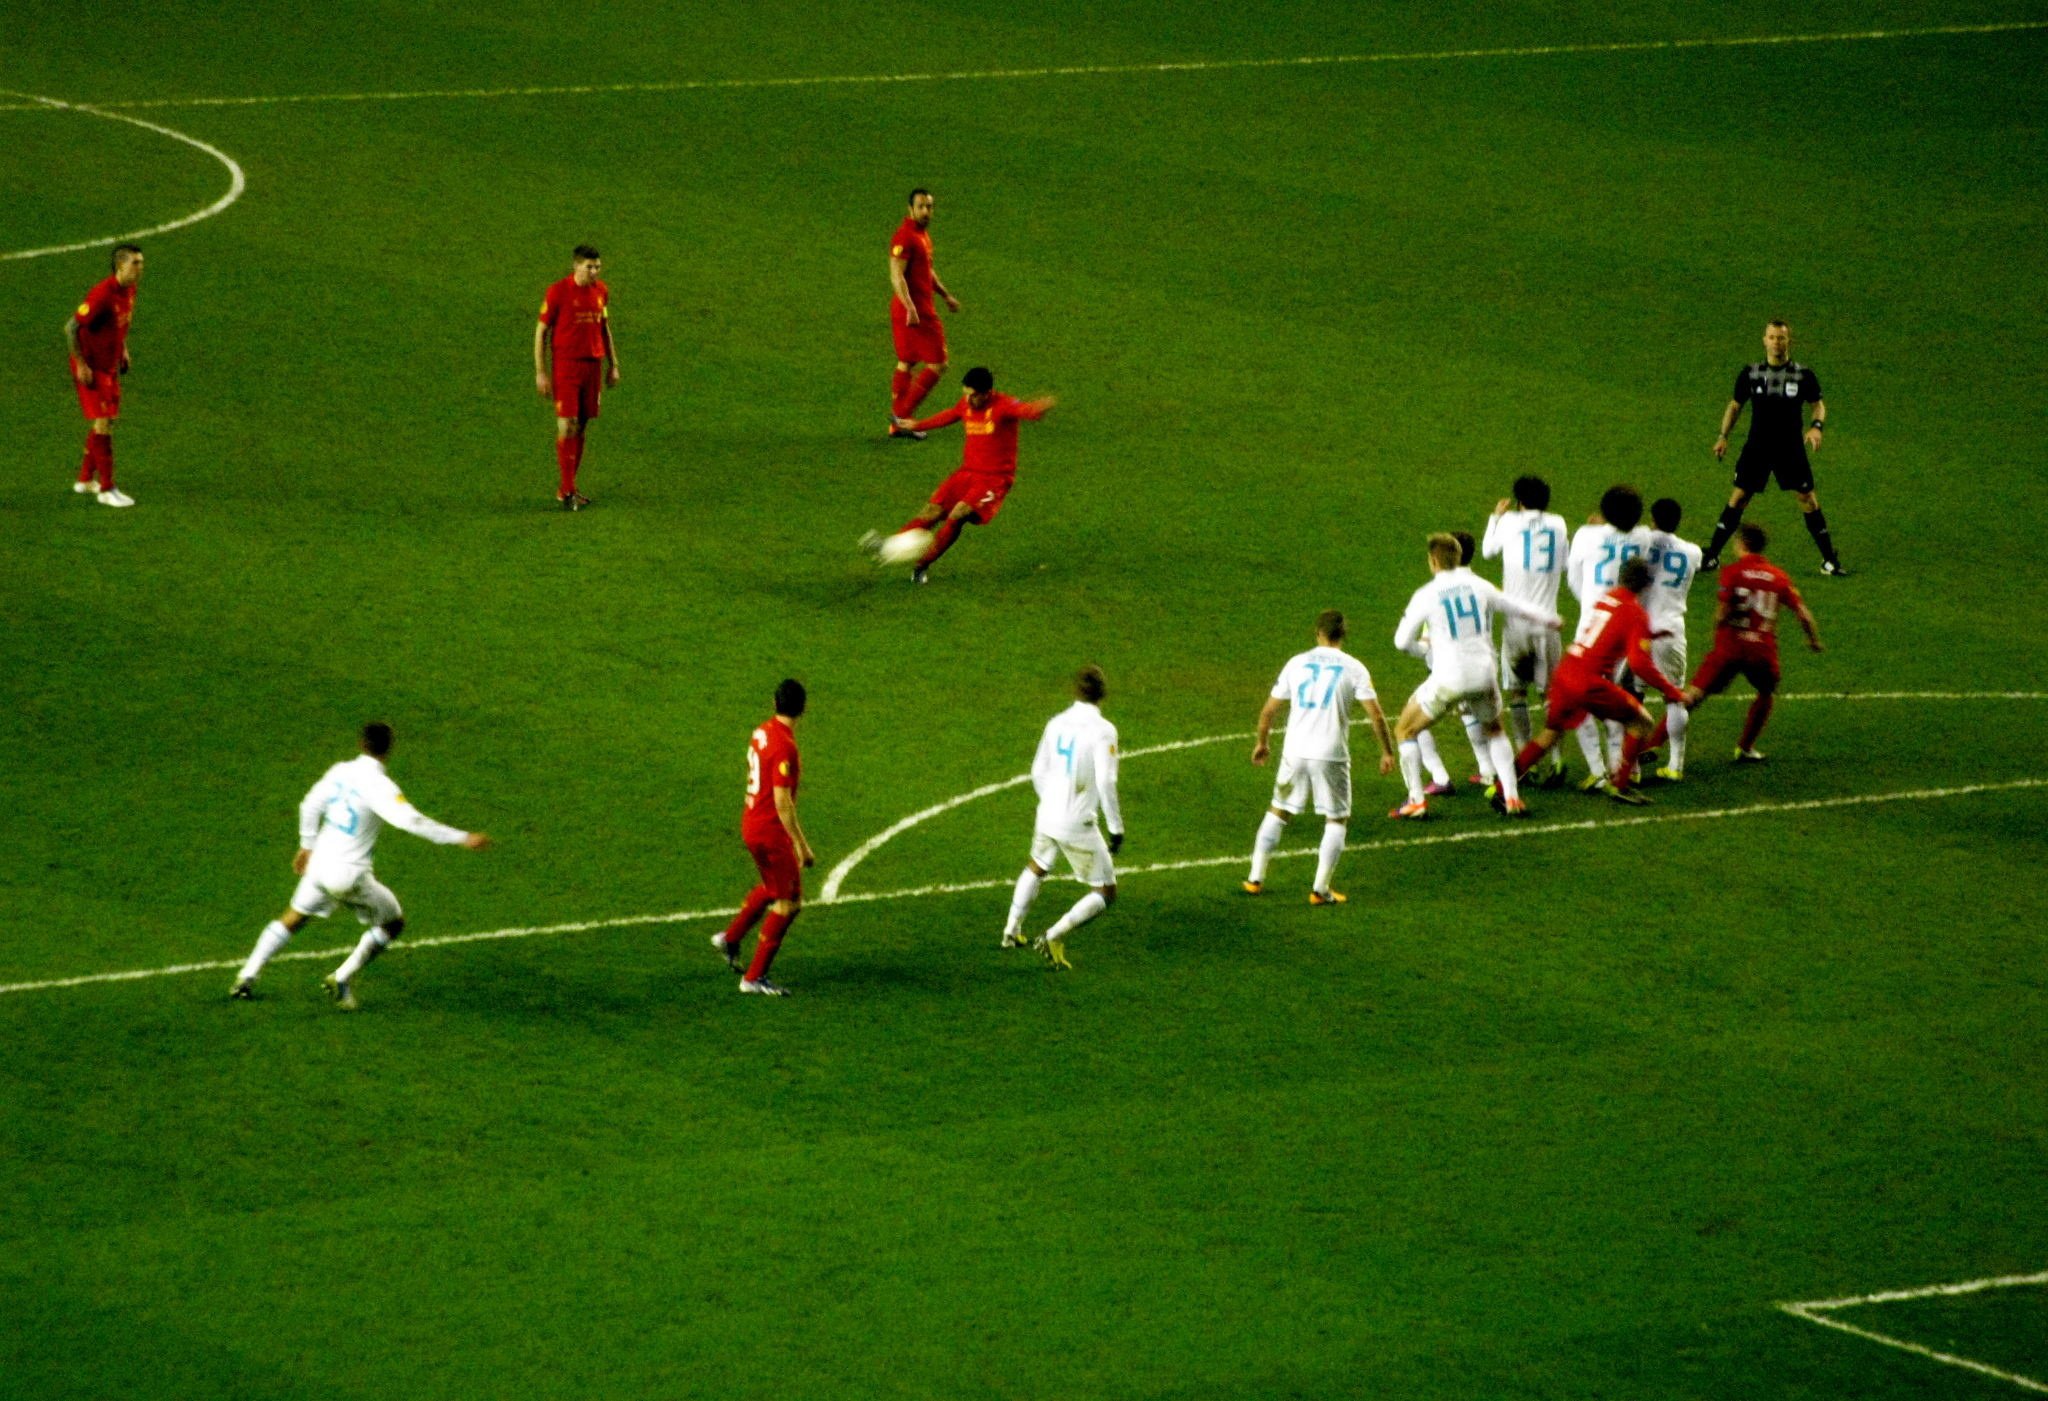 File:Luis Suarez free kick v Zenit.jpg - Wikipedia